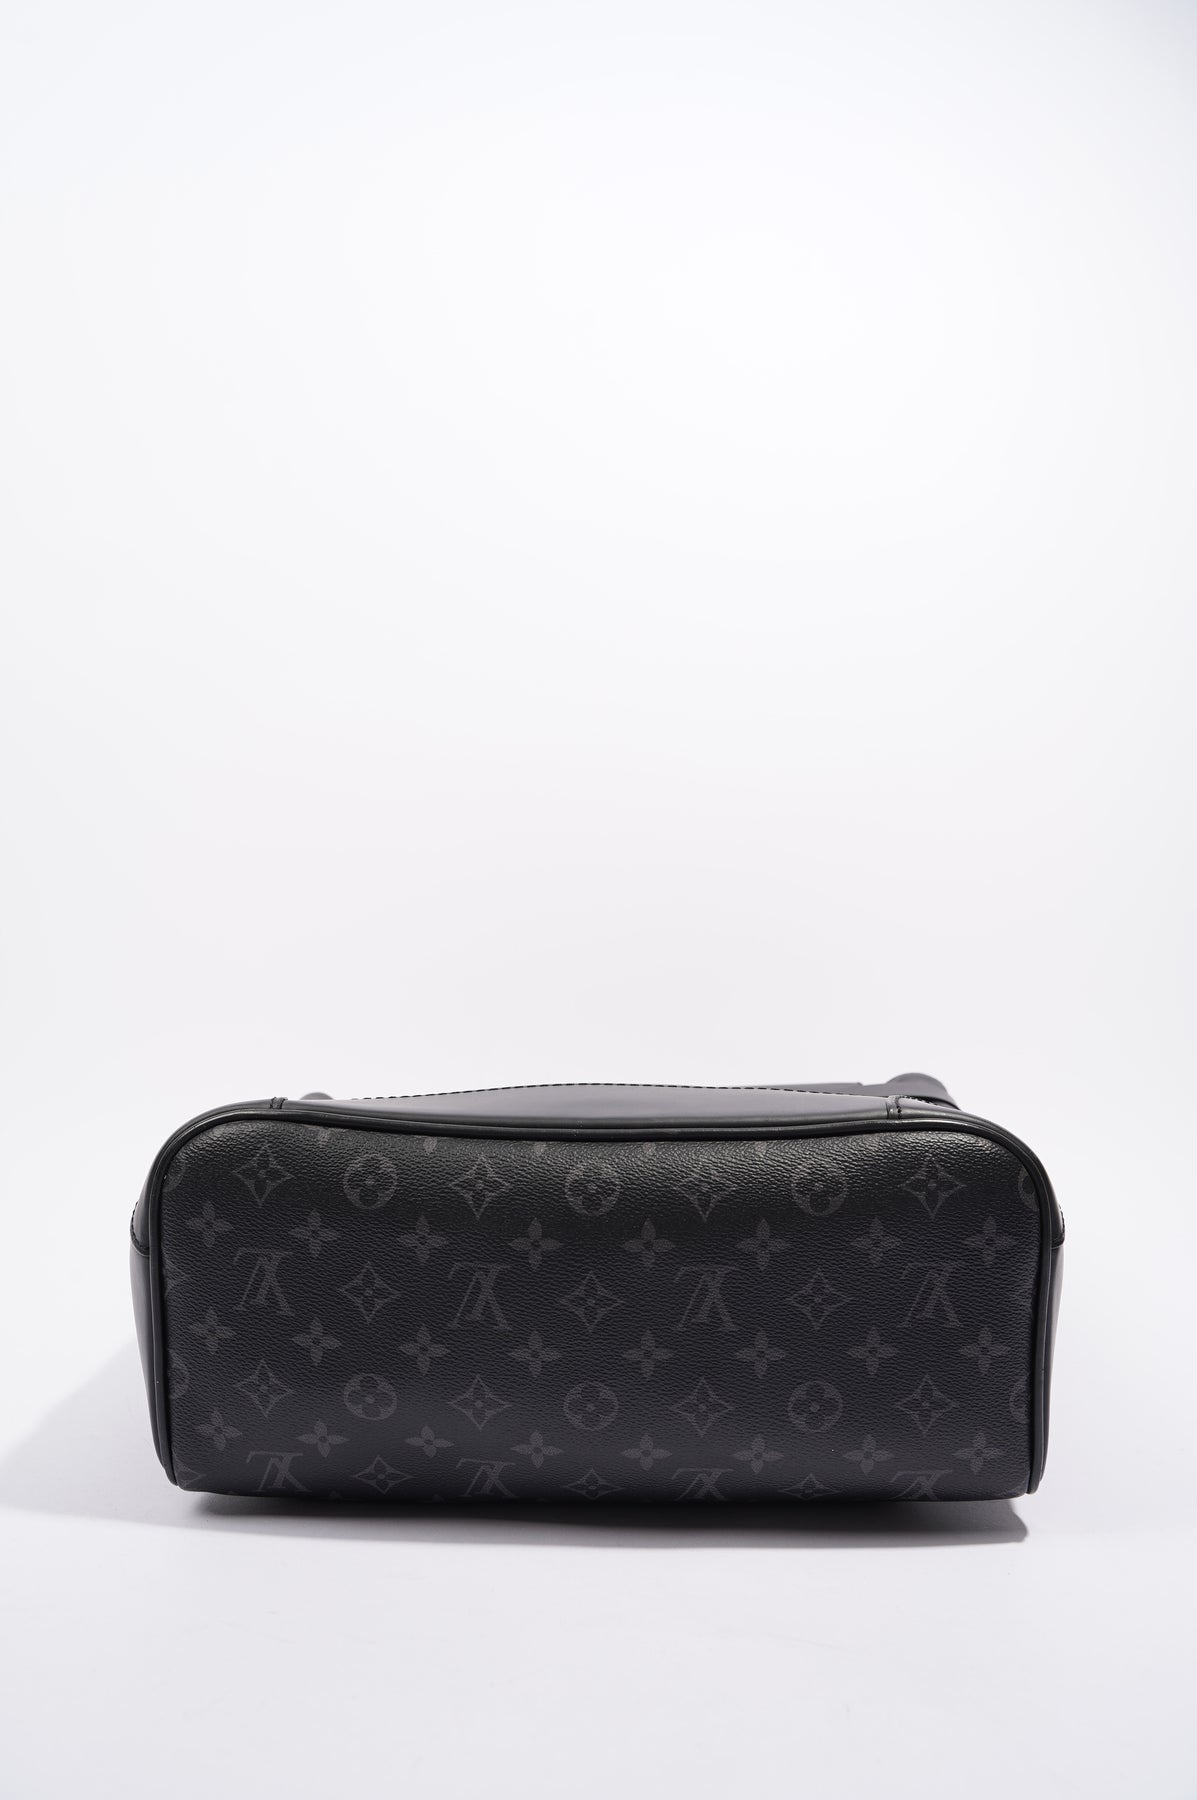 Louis Vuitton men’s backpack M30417